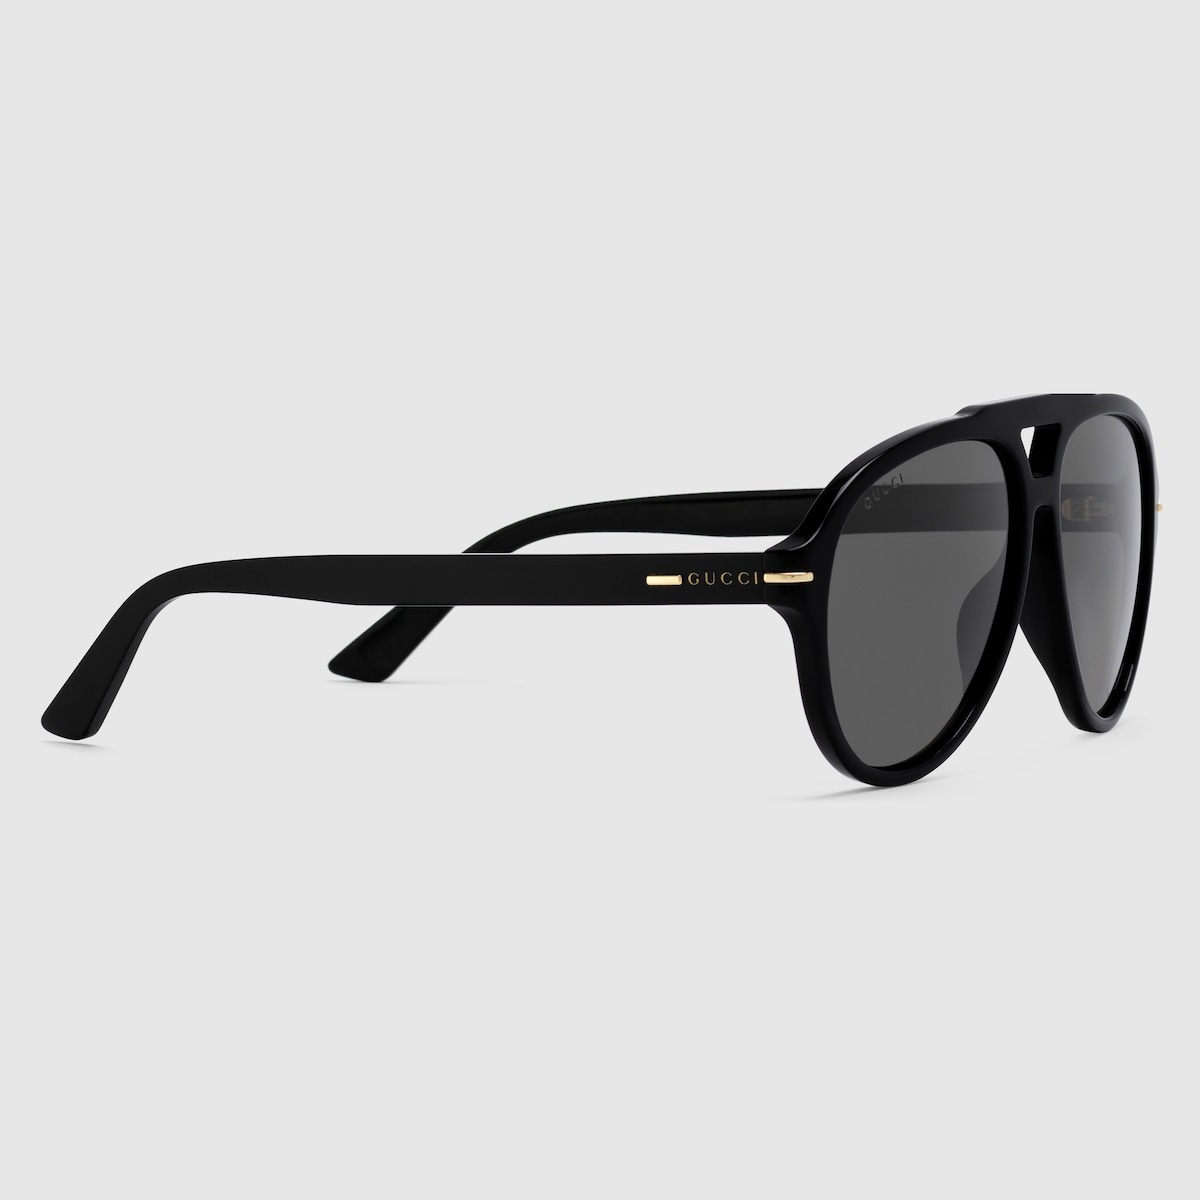 Navigator frame sunglasses - 2